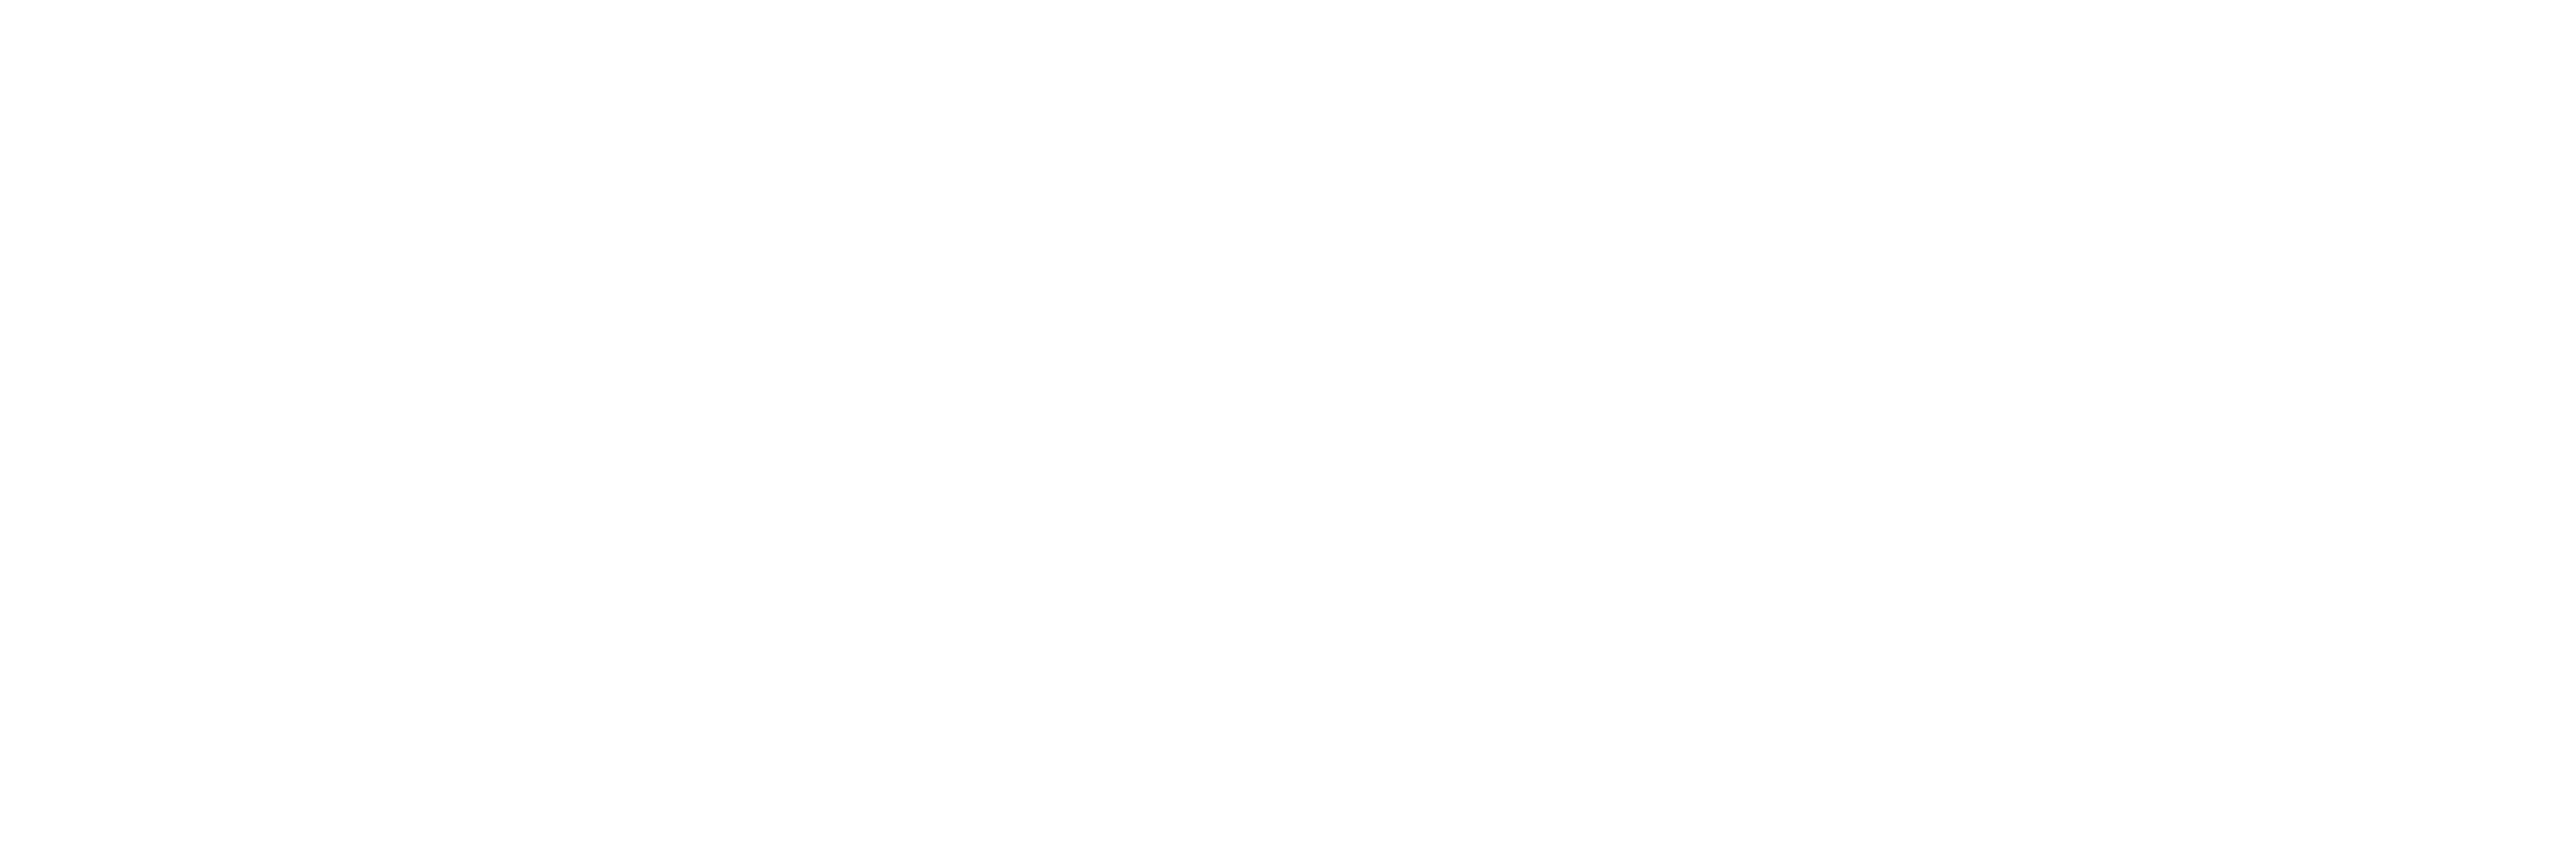 Hotel Humberto